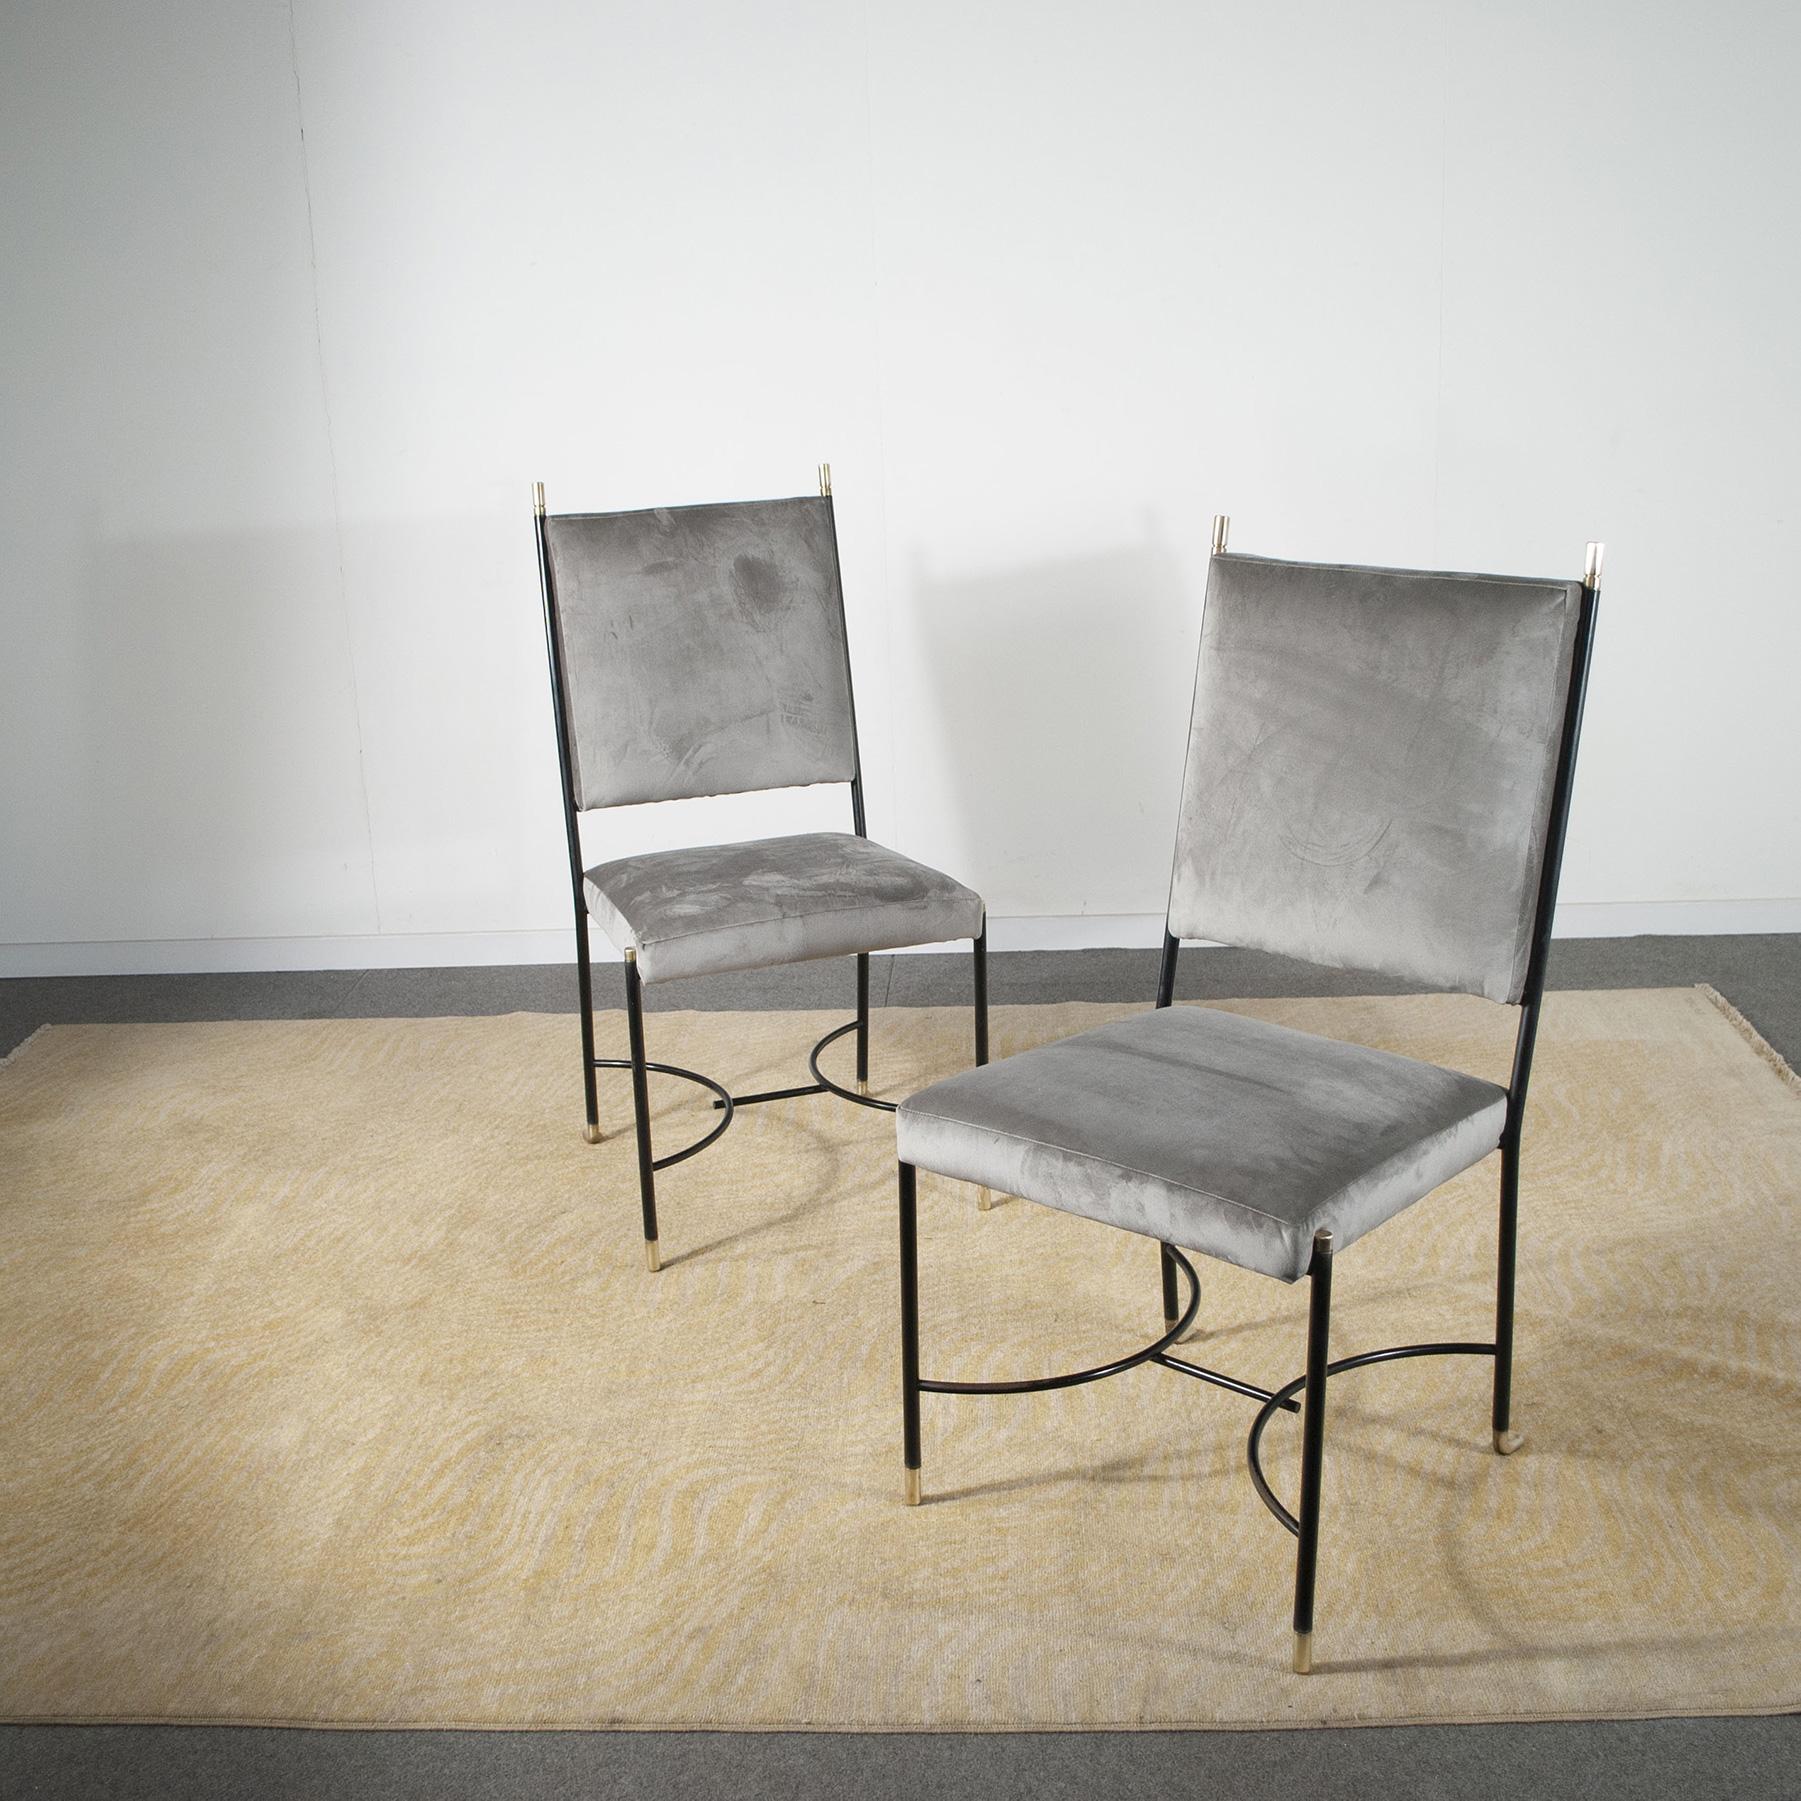 Satz von zwei Stühlen im Regency-Stil von Luigi Caccia Dominioni Eisenrahmen mit Messingbeschlägen in grauem Samt 1960er Jahre.